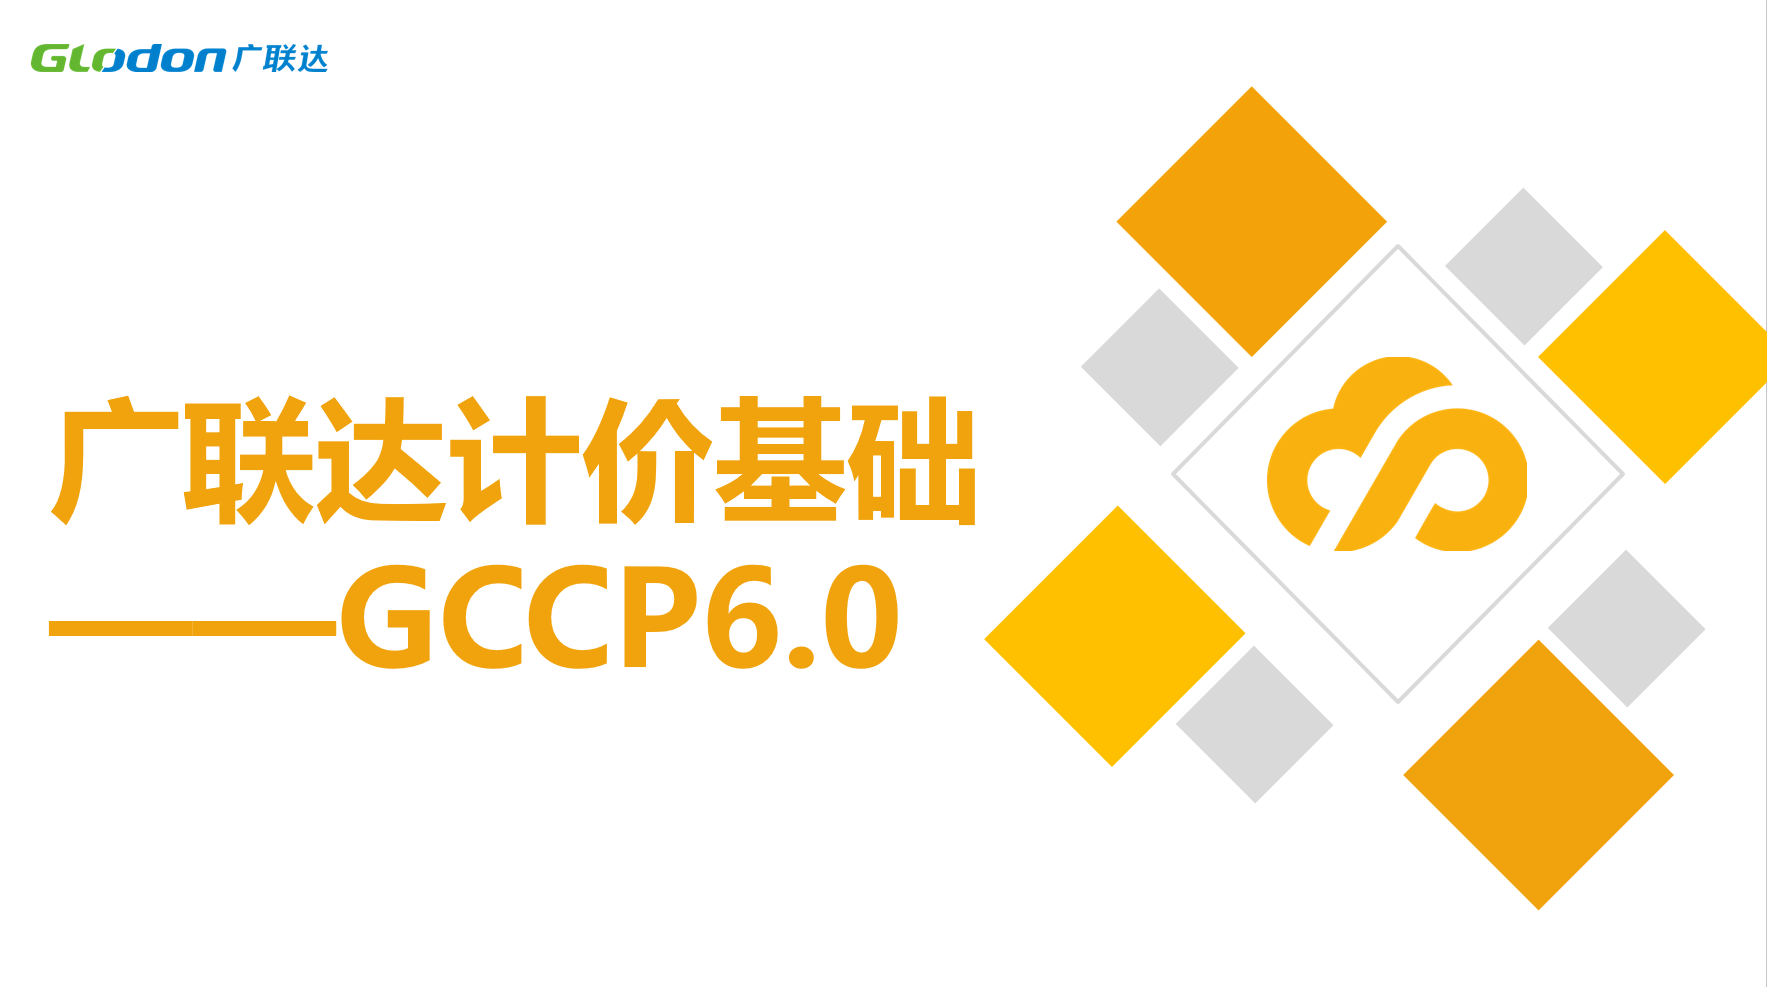 广联达计价基础 ——GCCP6.0